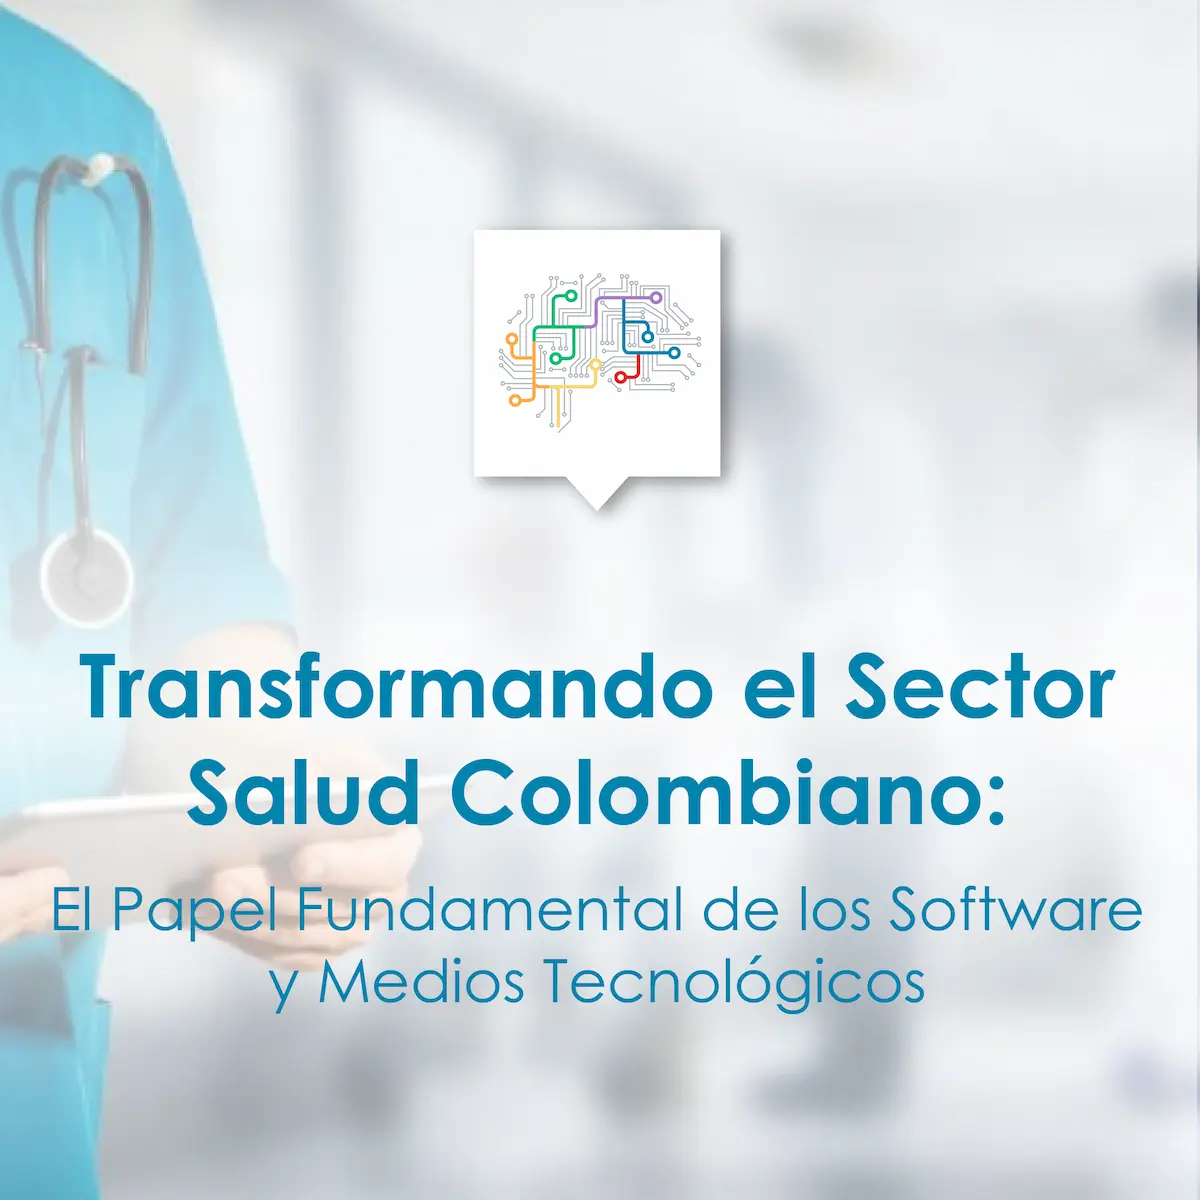 Transformando el Sector Salud Colombiano: El Papel Fundamental de los Software y Medios Tecnológicos